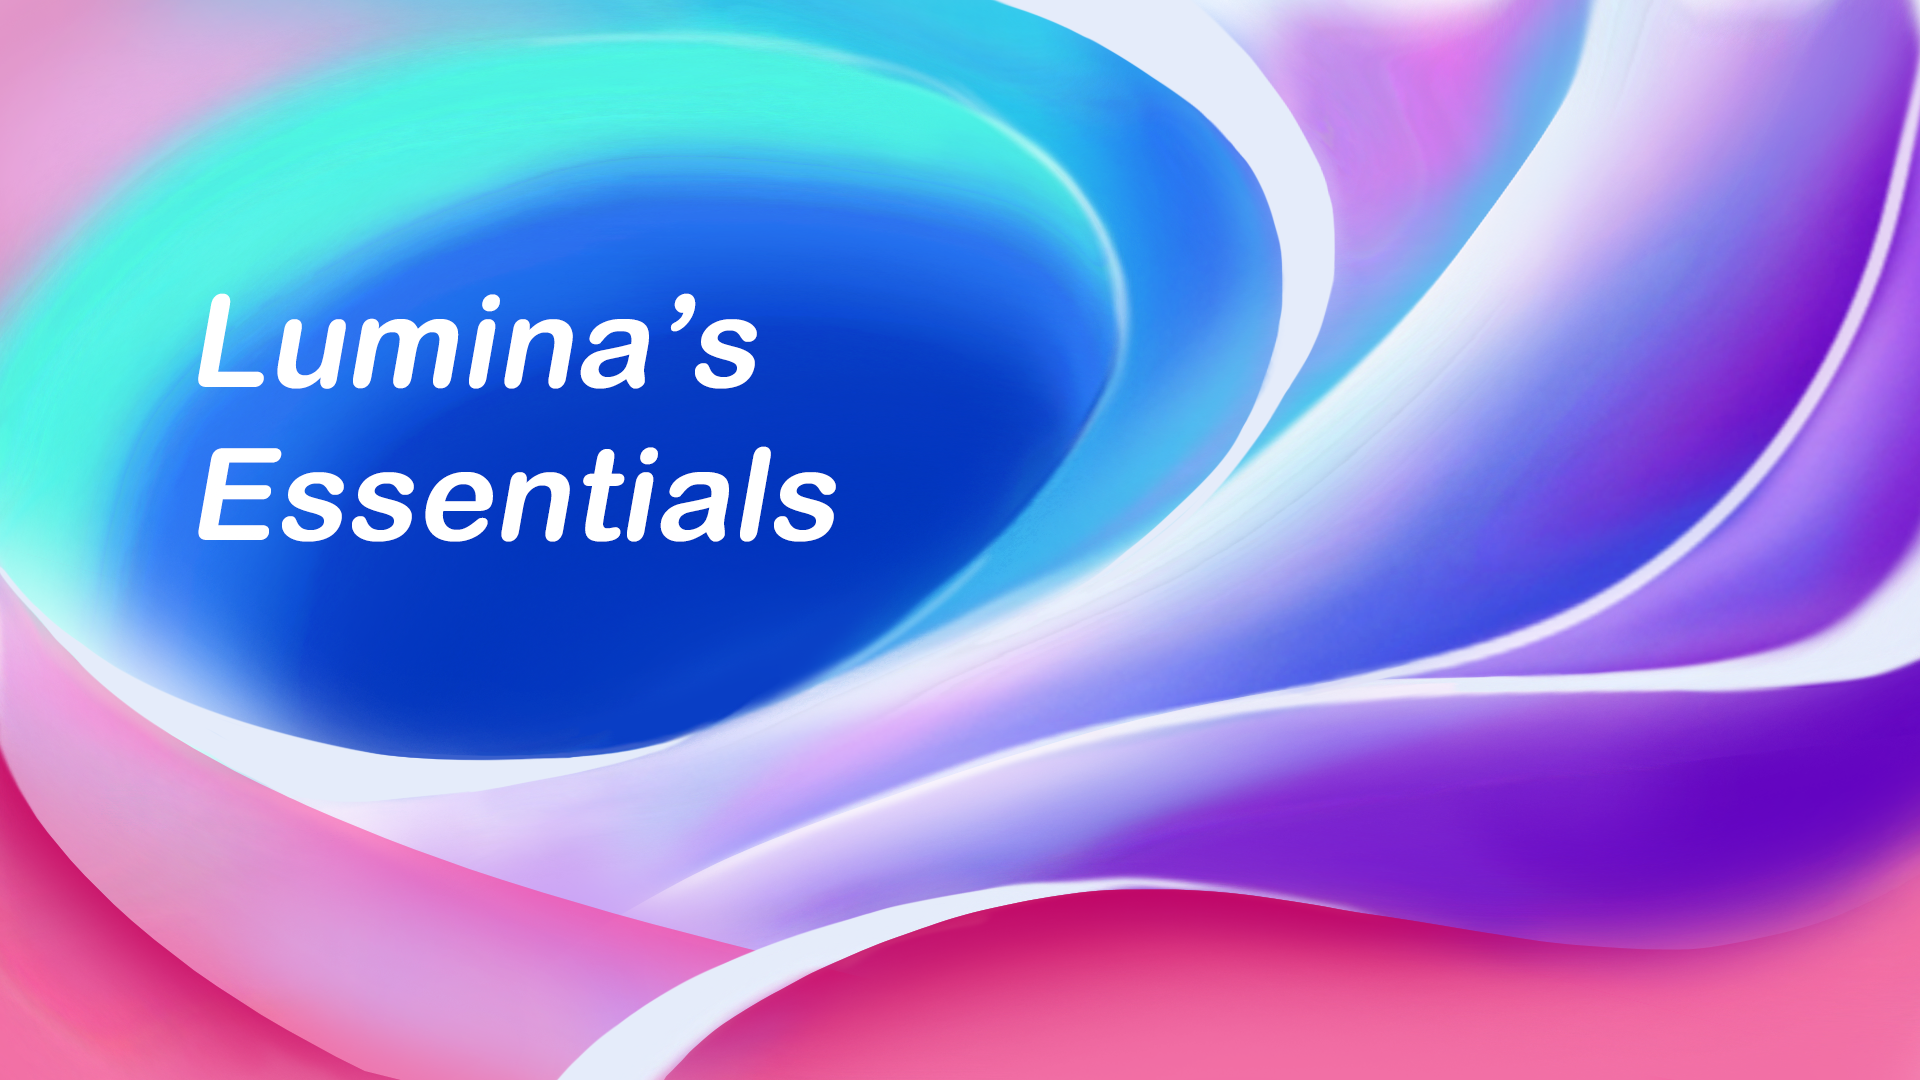 Luminas Essentials Logo.png